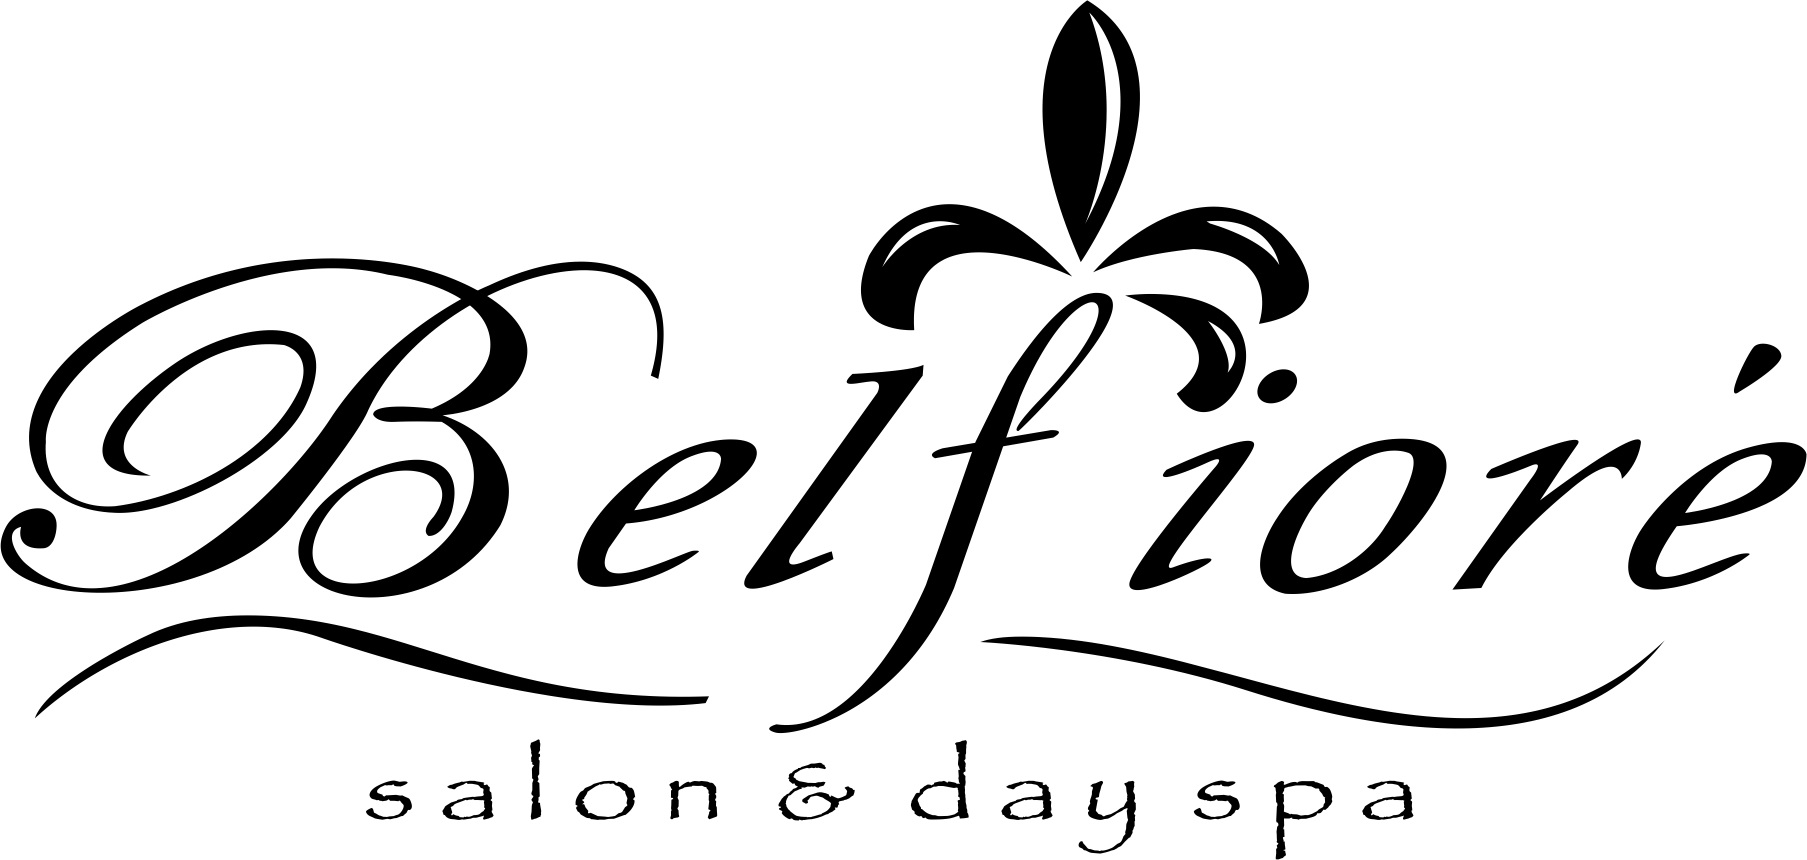 Belfiore Salon and Day Spa